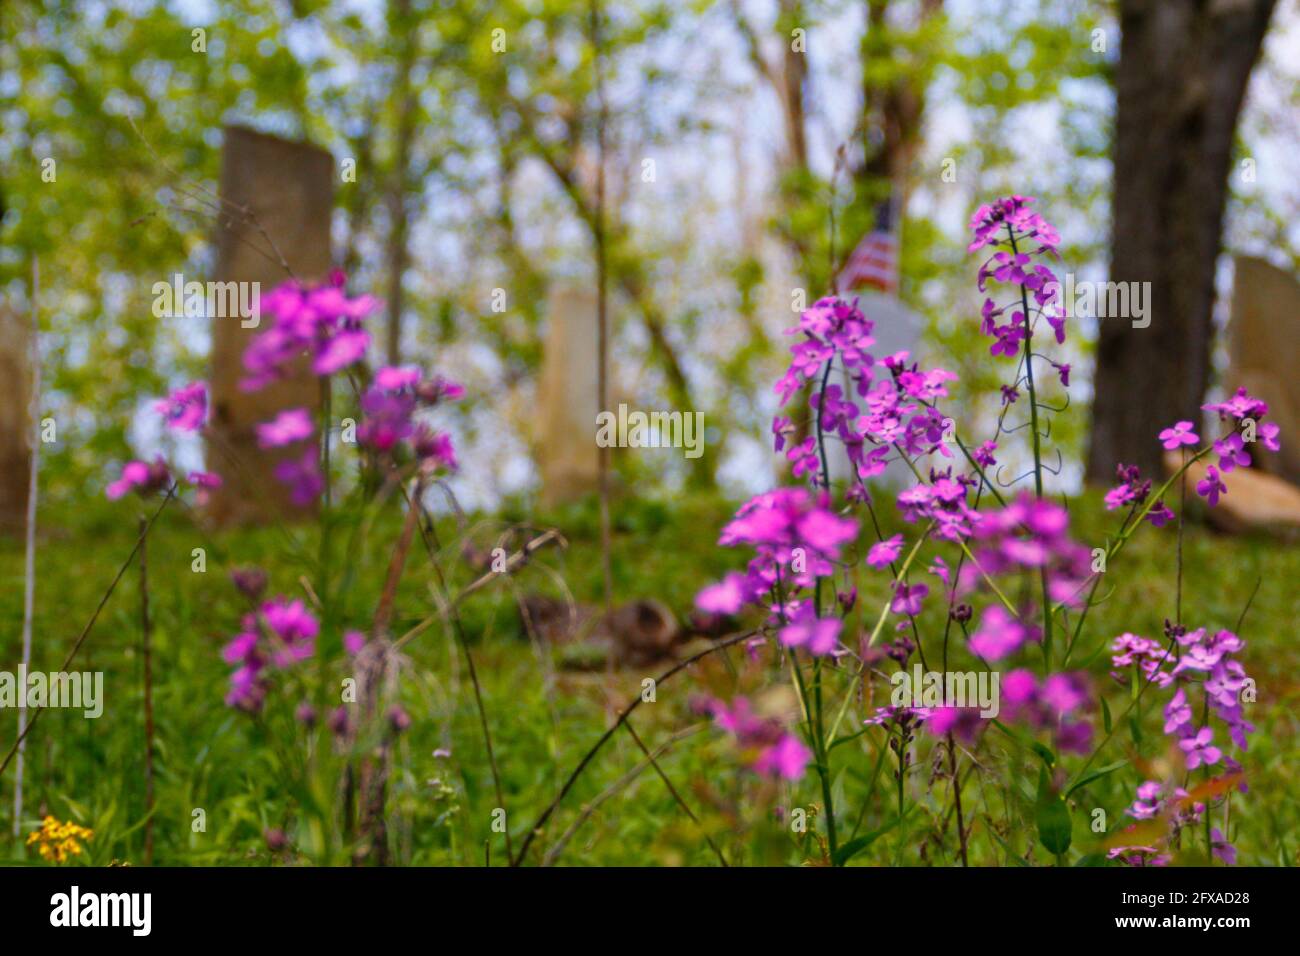 Phlox Flowers Near a Cemetery Stock Photo